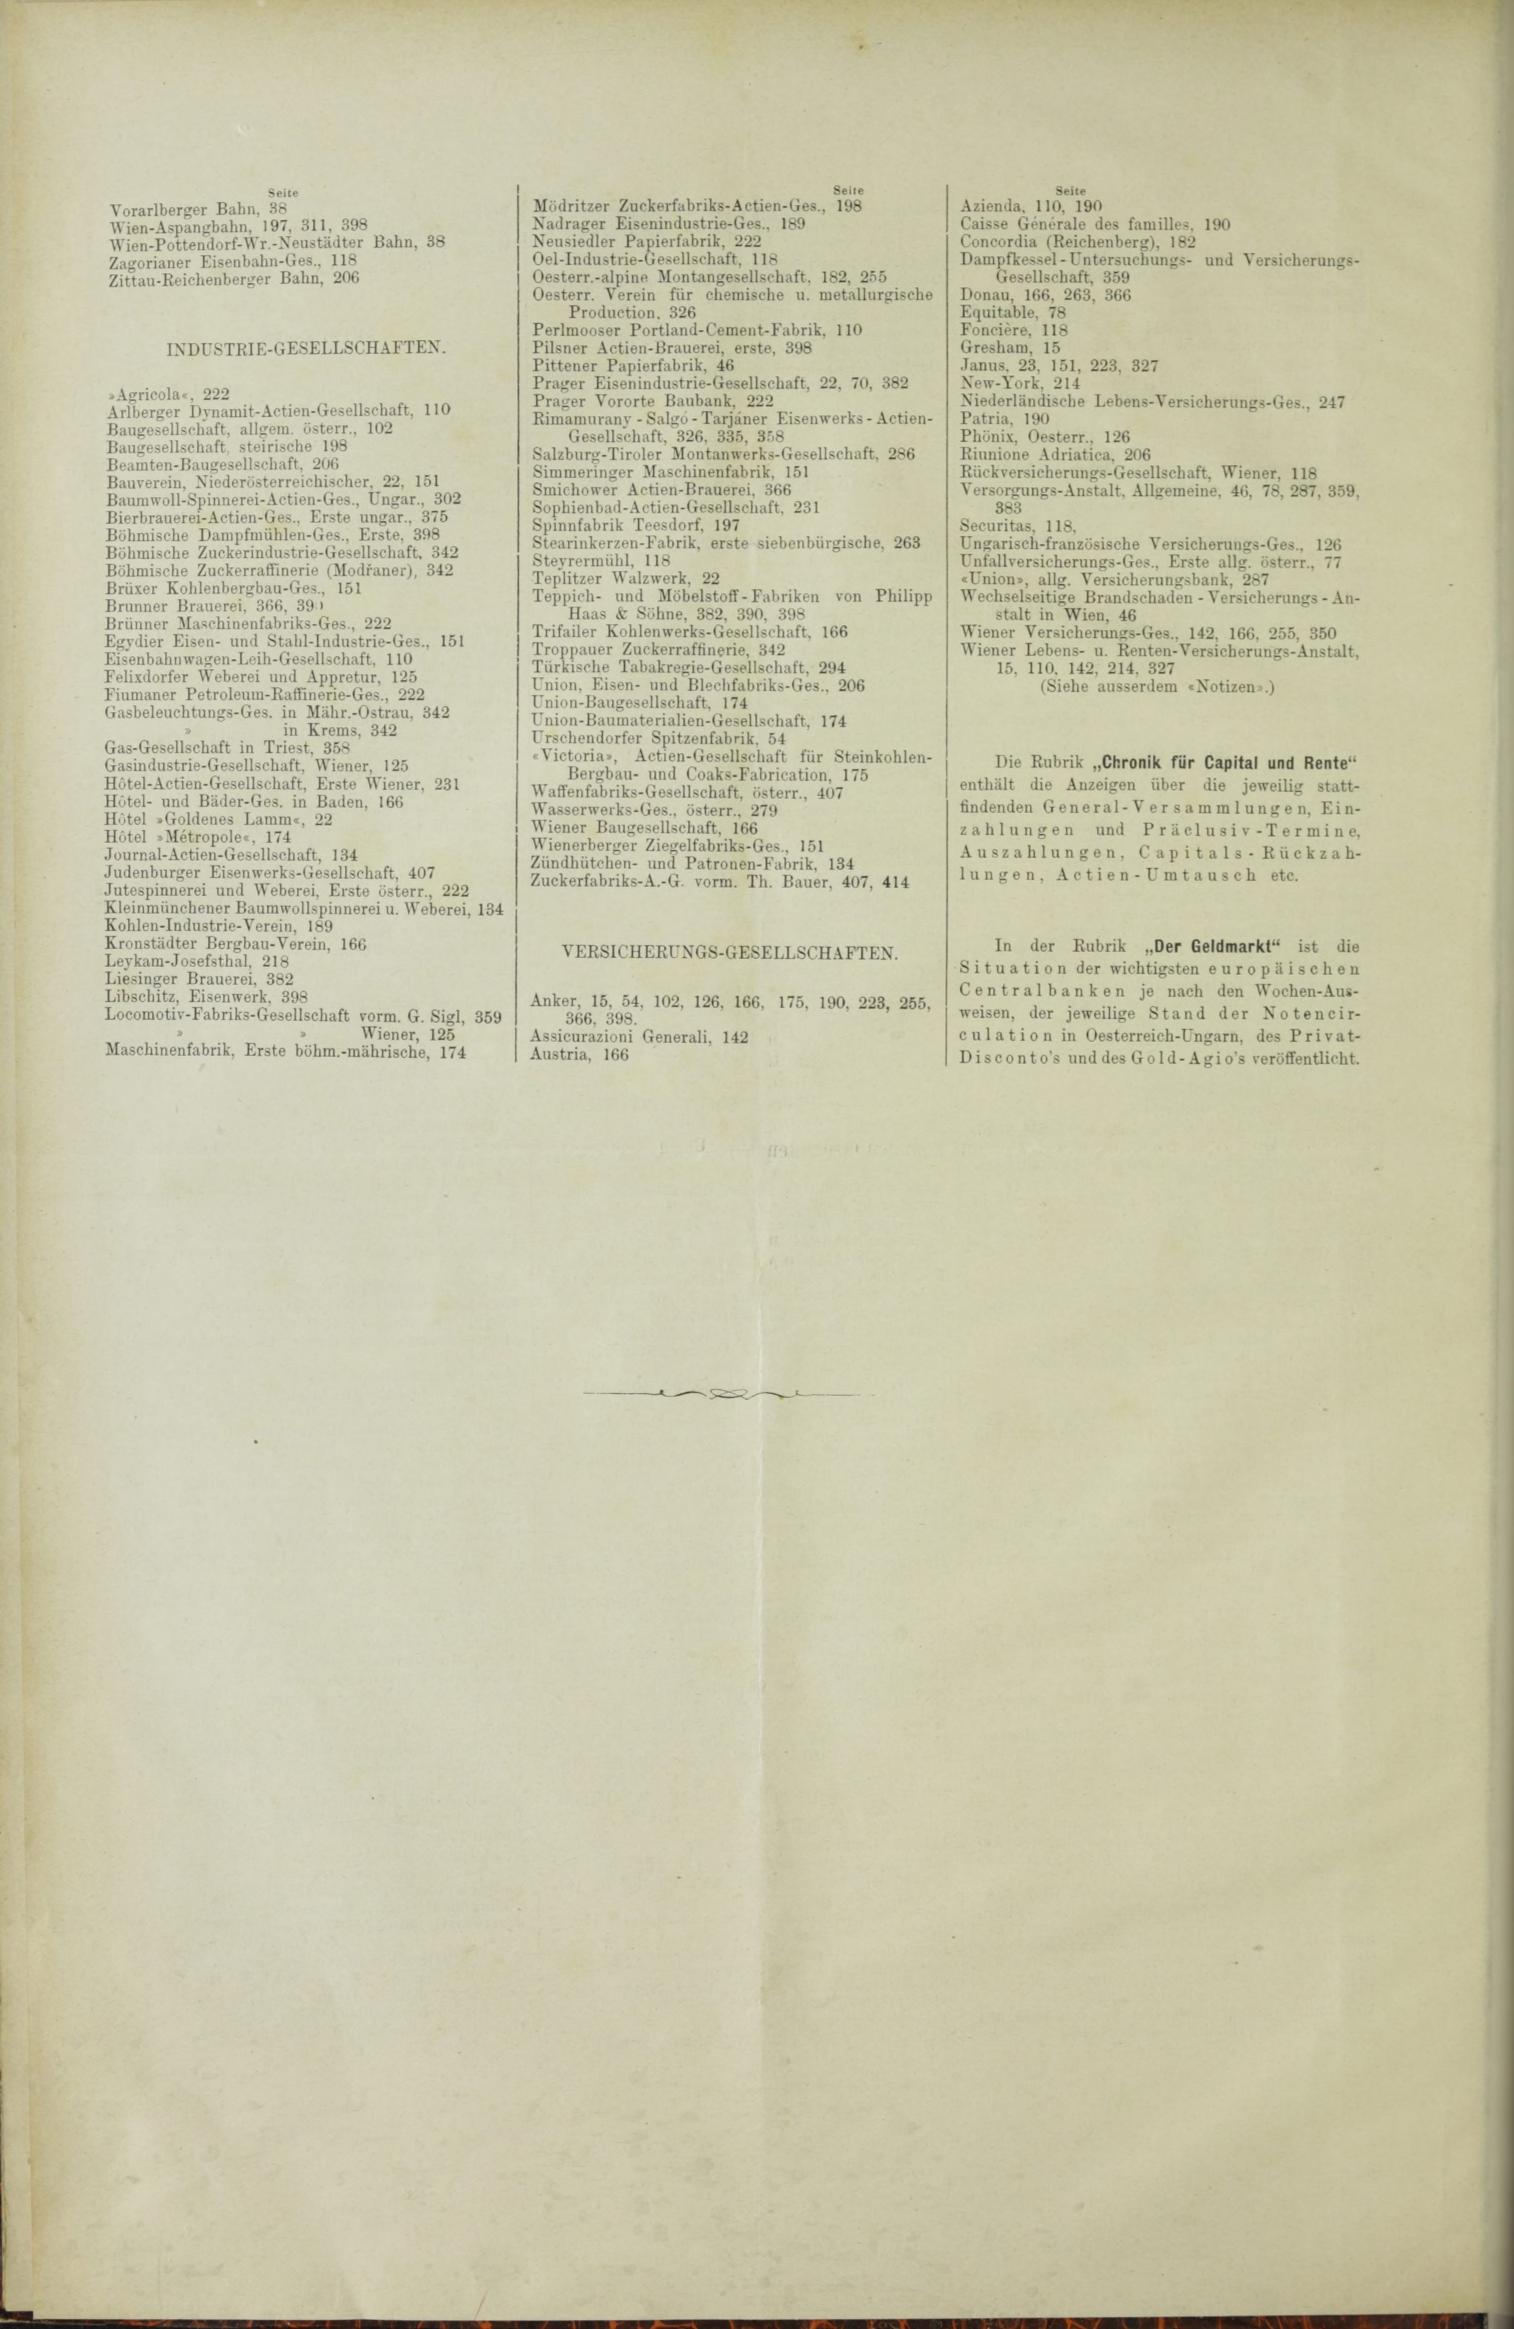 Der Tresor 11.11.1886 - Seite 12